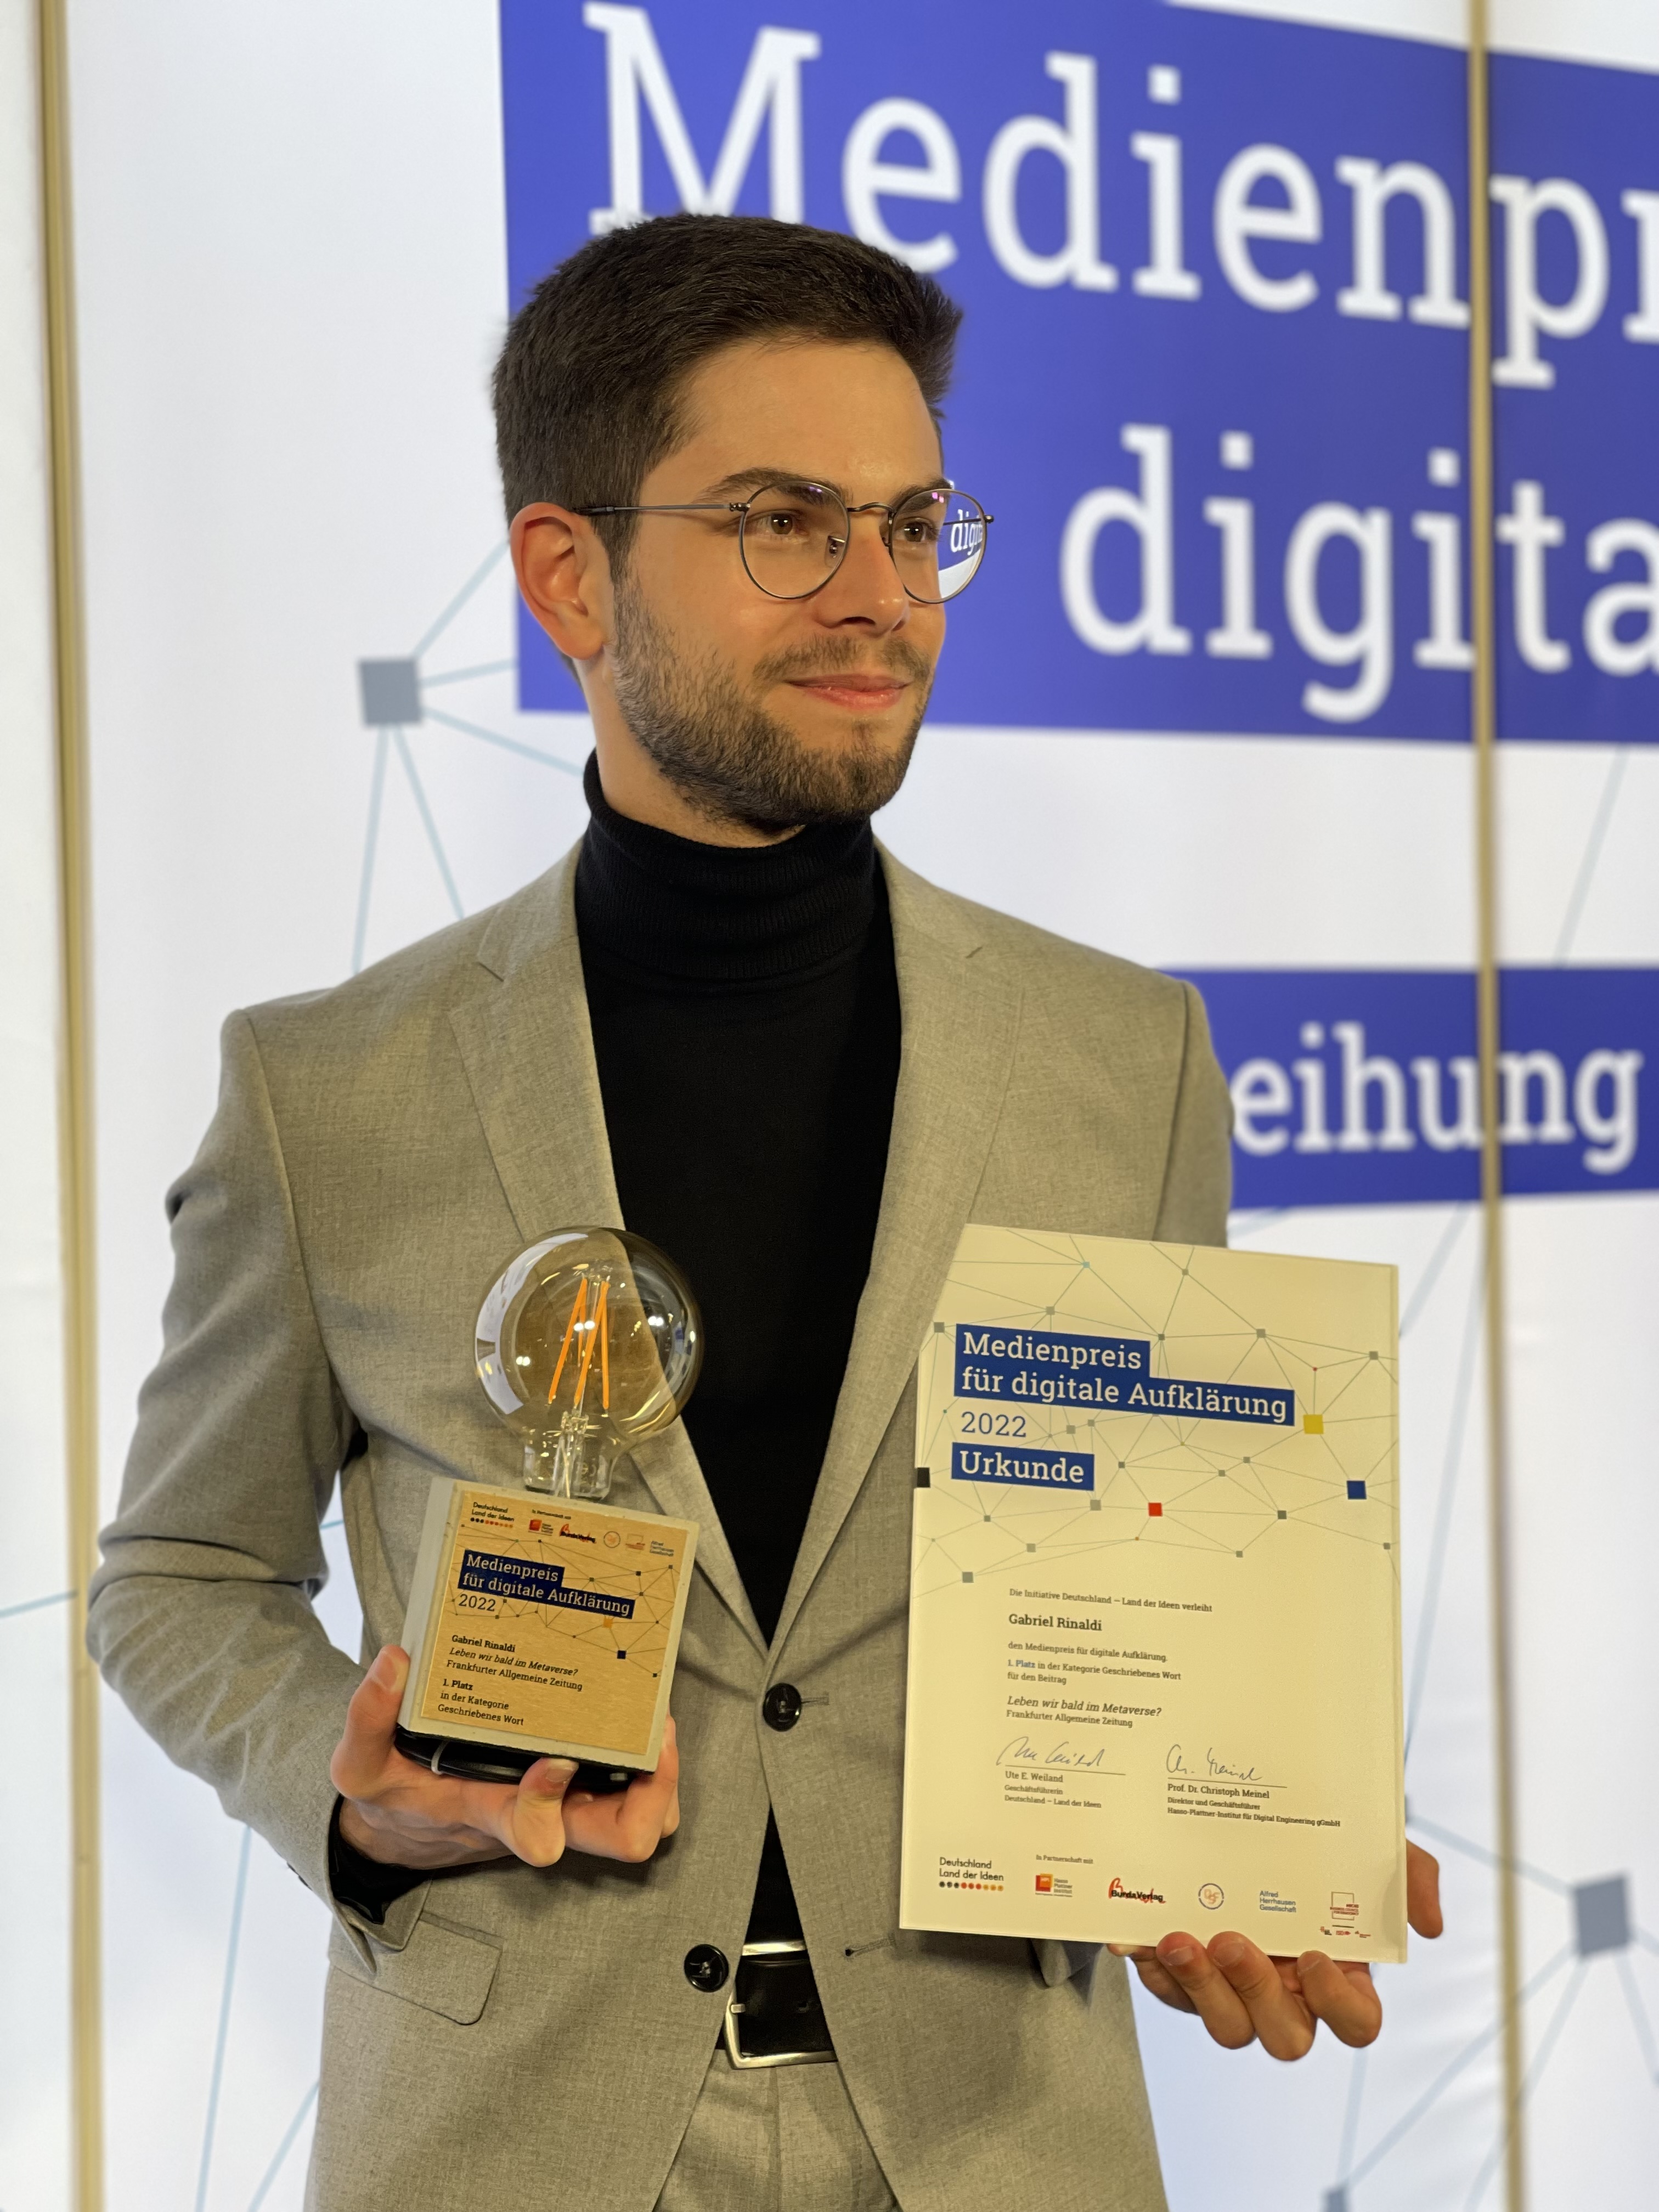 Gabriel Rinaldi ha ricevuto il “Media Award for Digital Enlightenment 2022” per il suo articolo sul metaverso nella Frankfurter Allgemeine Zeitung, fotografato da Larena Klöckner.